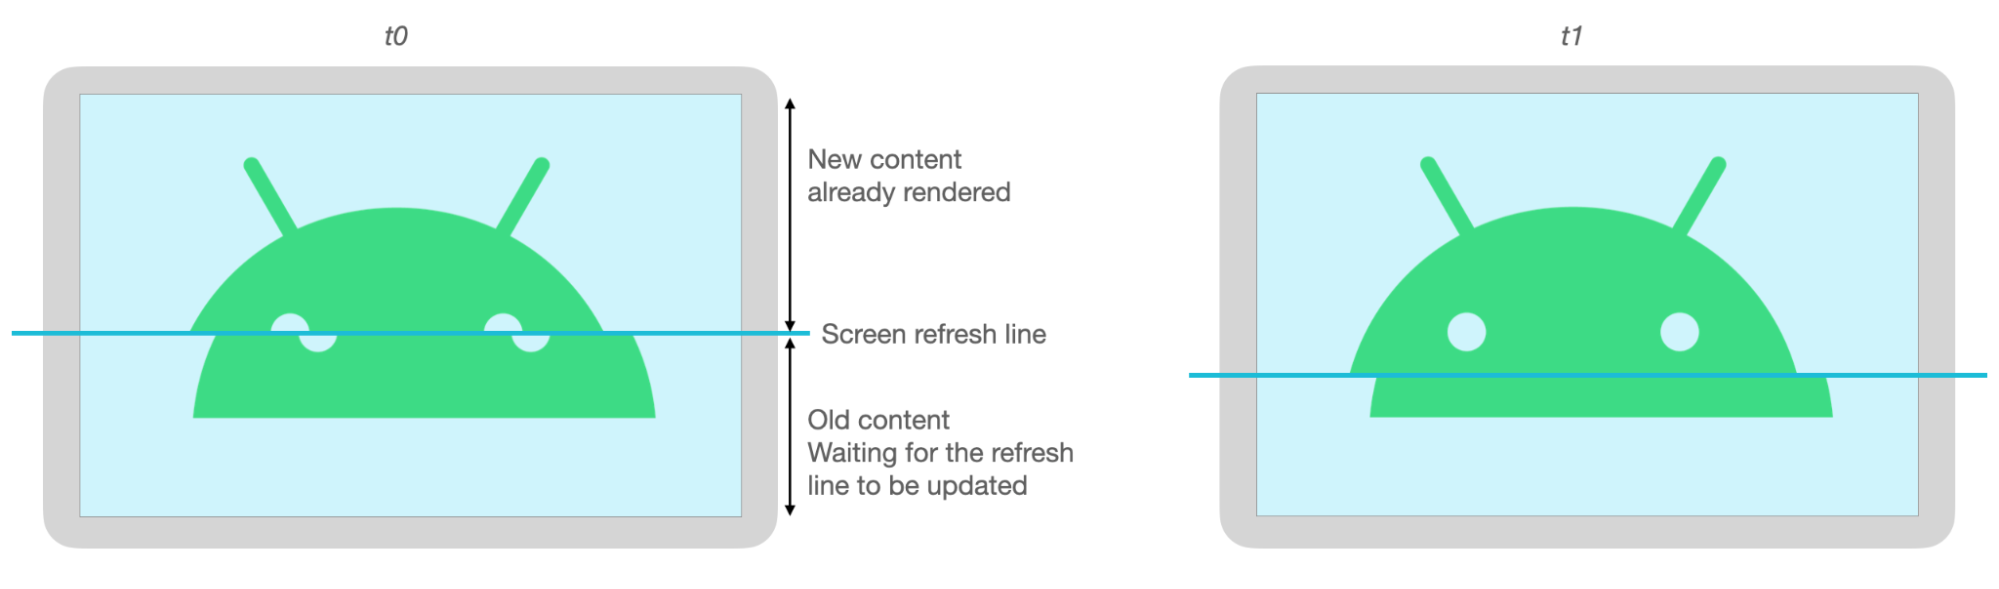 Górne i dolne części obrazu Androida są niewłaściwie wyrównane z powodu rozerwania się podczas odświeżania ekranu.